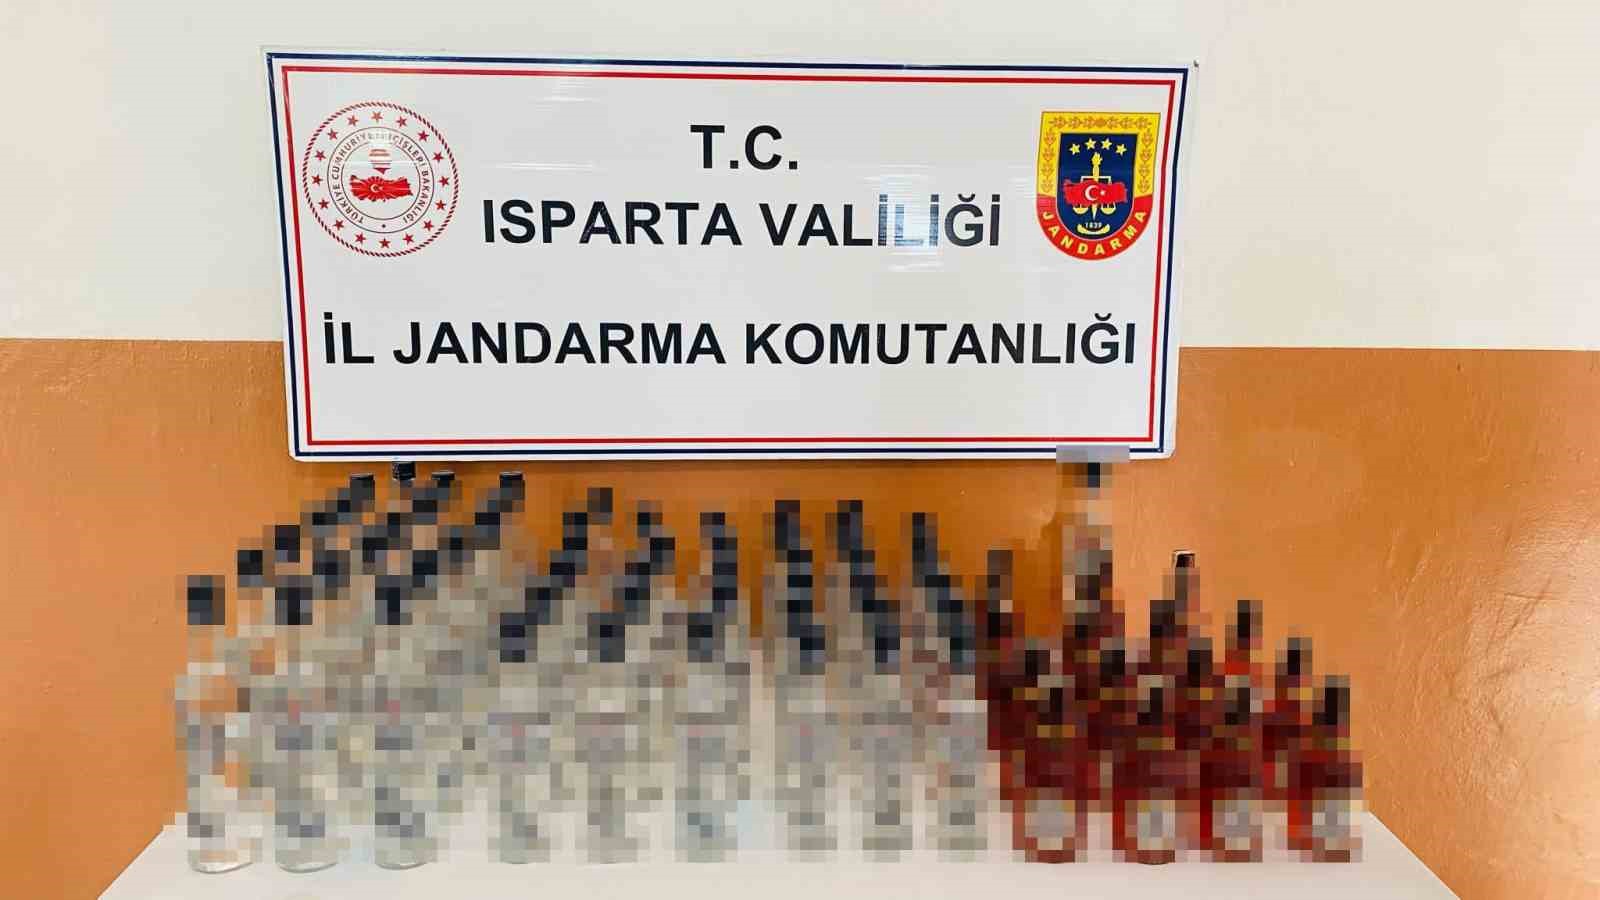 Satılmak üzere Isparta’ya getirilen 211 litre kaçak içki ele geçirildi
